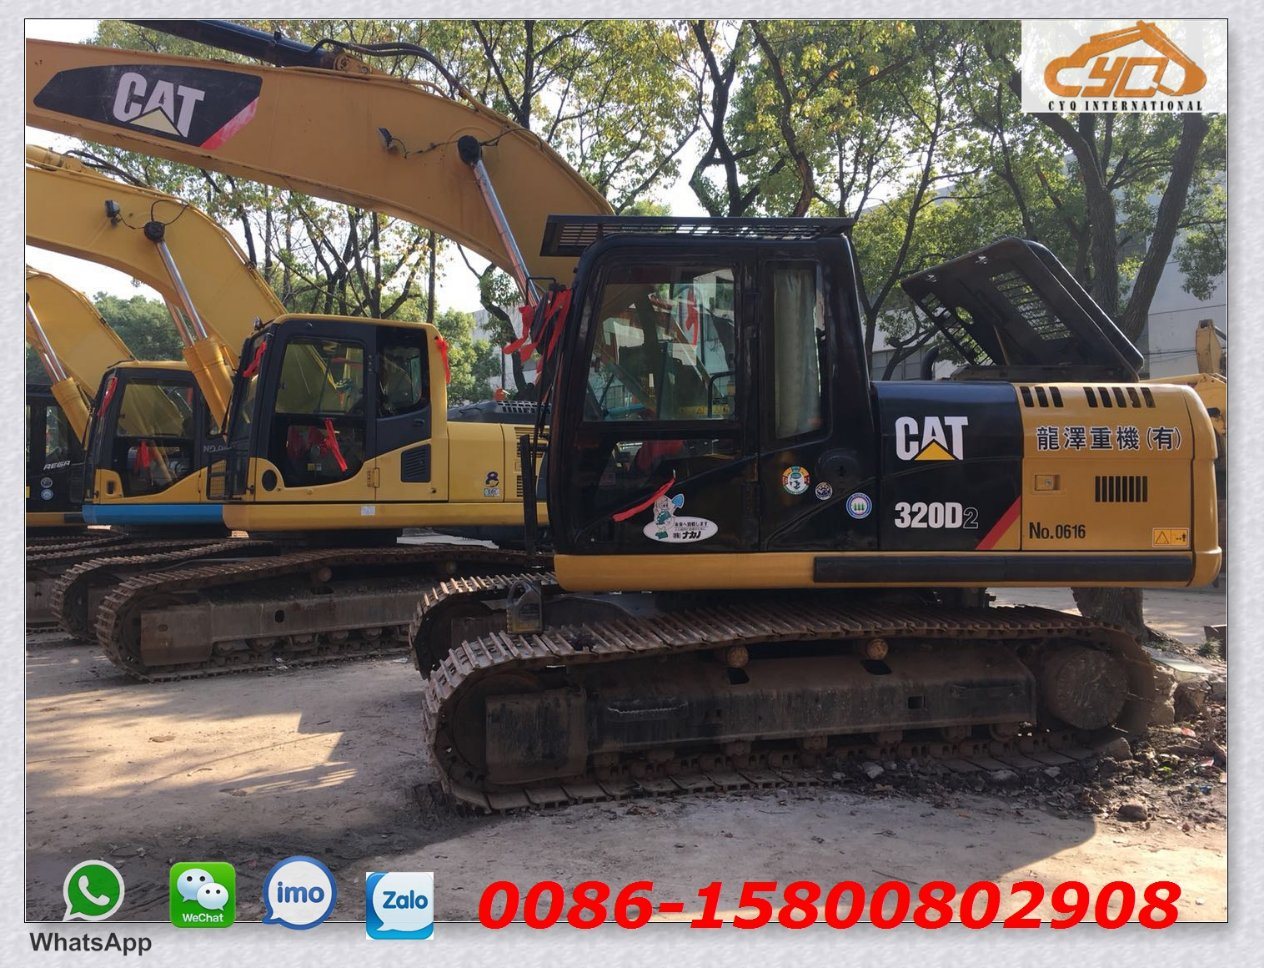 Used Cat Excavator Cat 320d2 for Sale